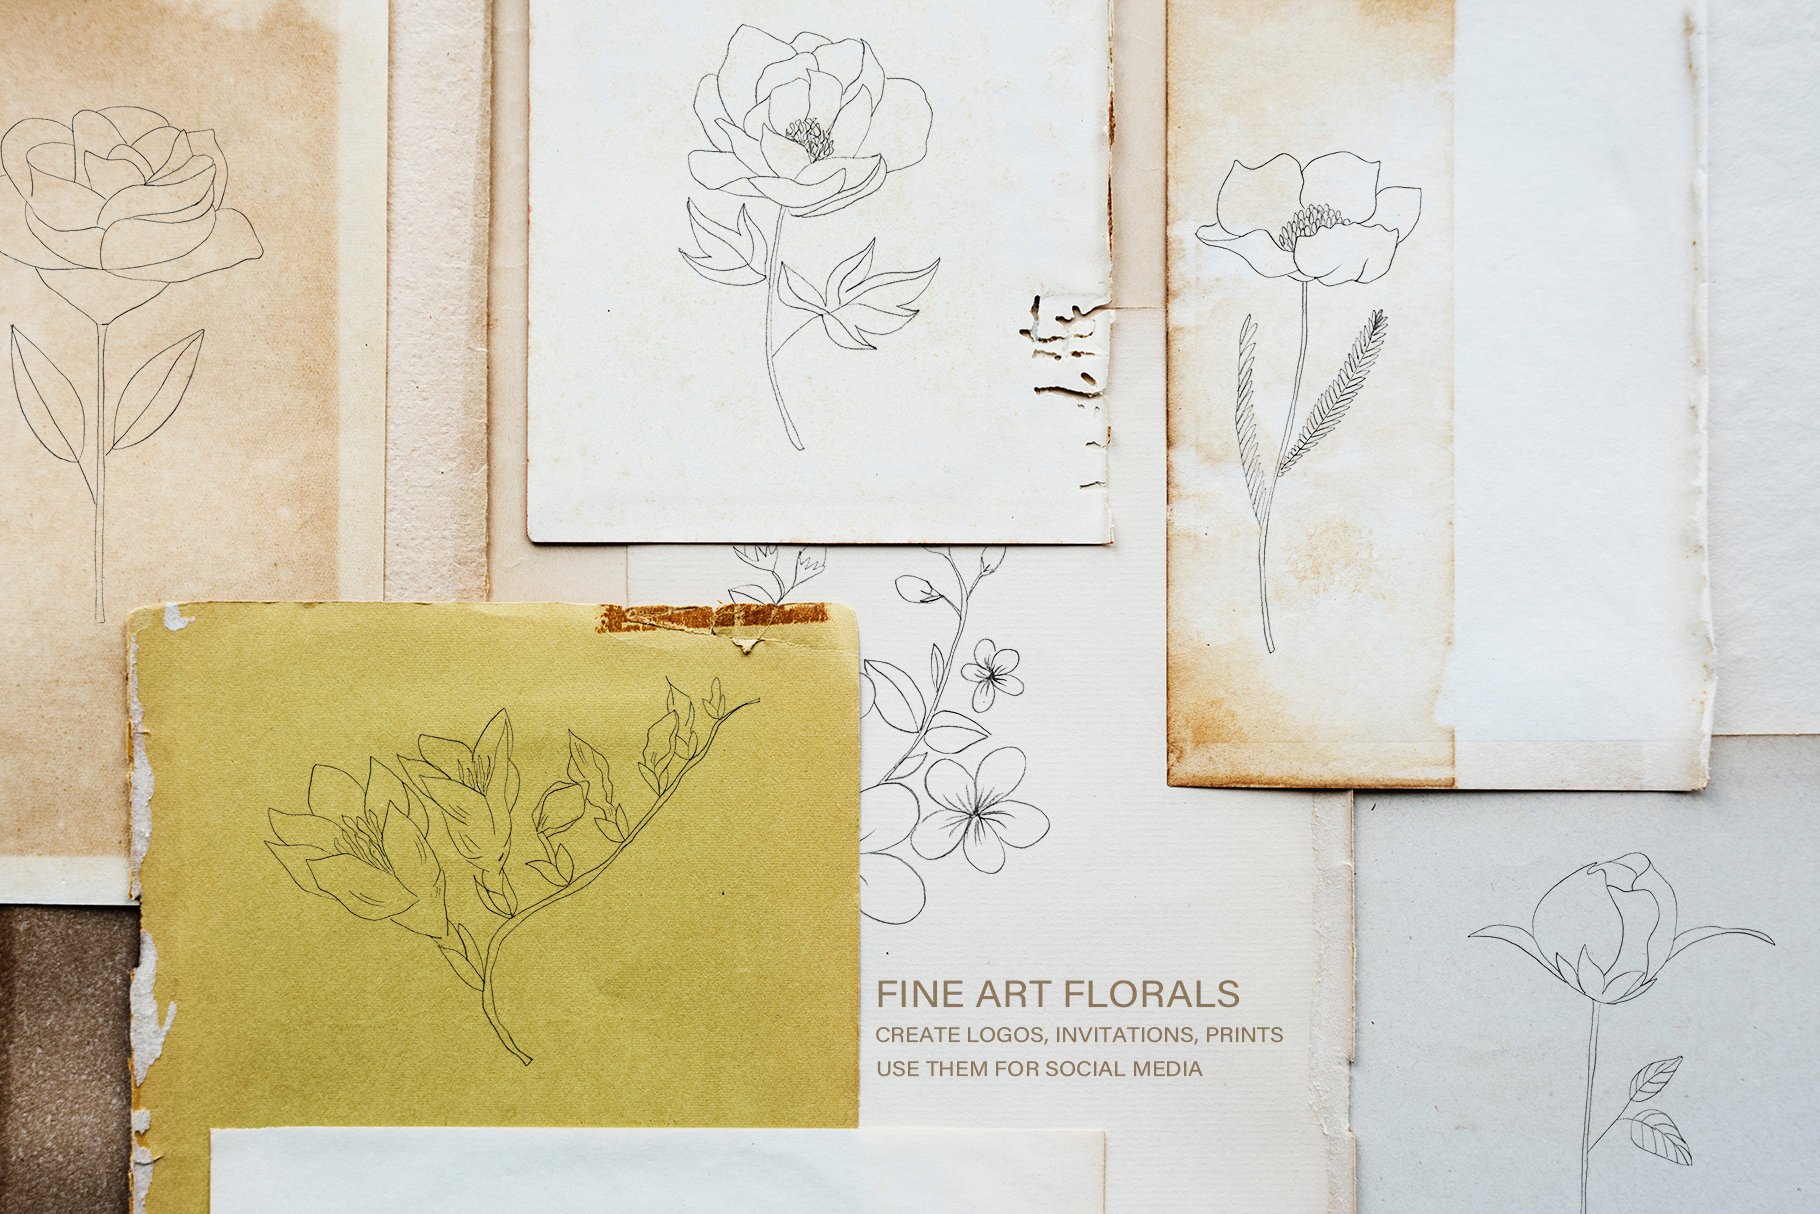 Fine Art Florals - Pencil Sketches preview image.